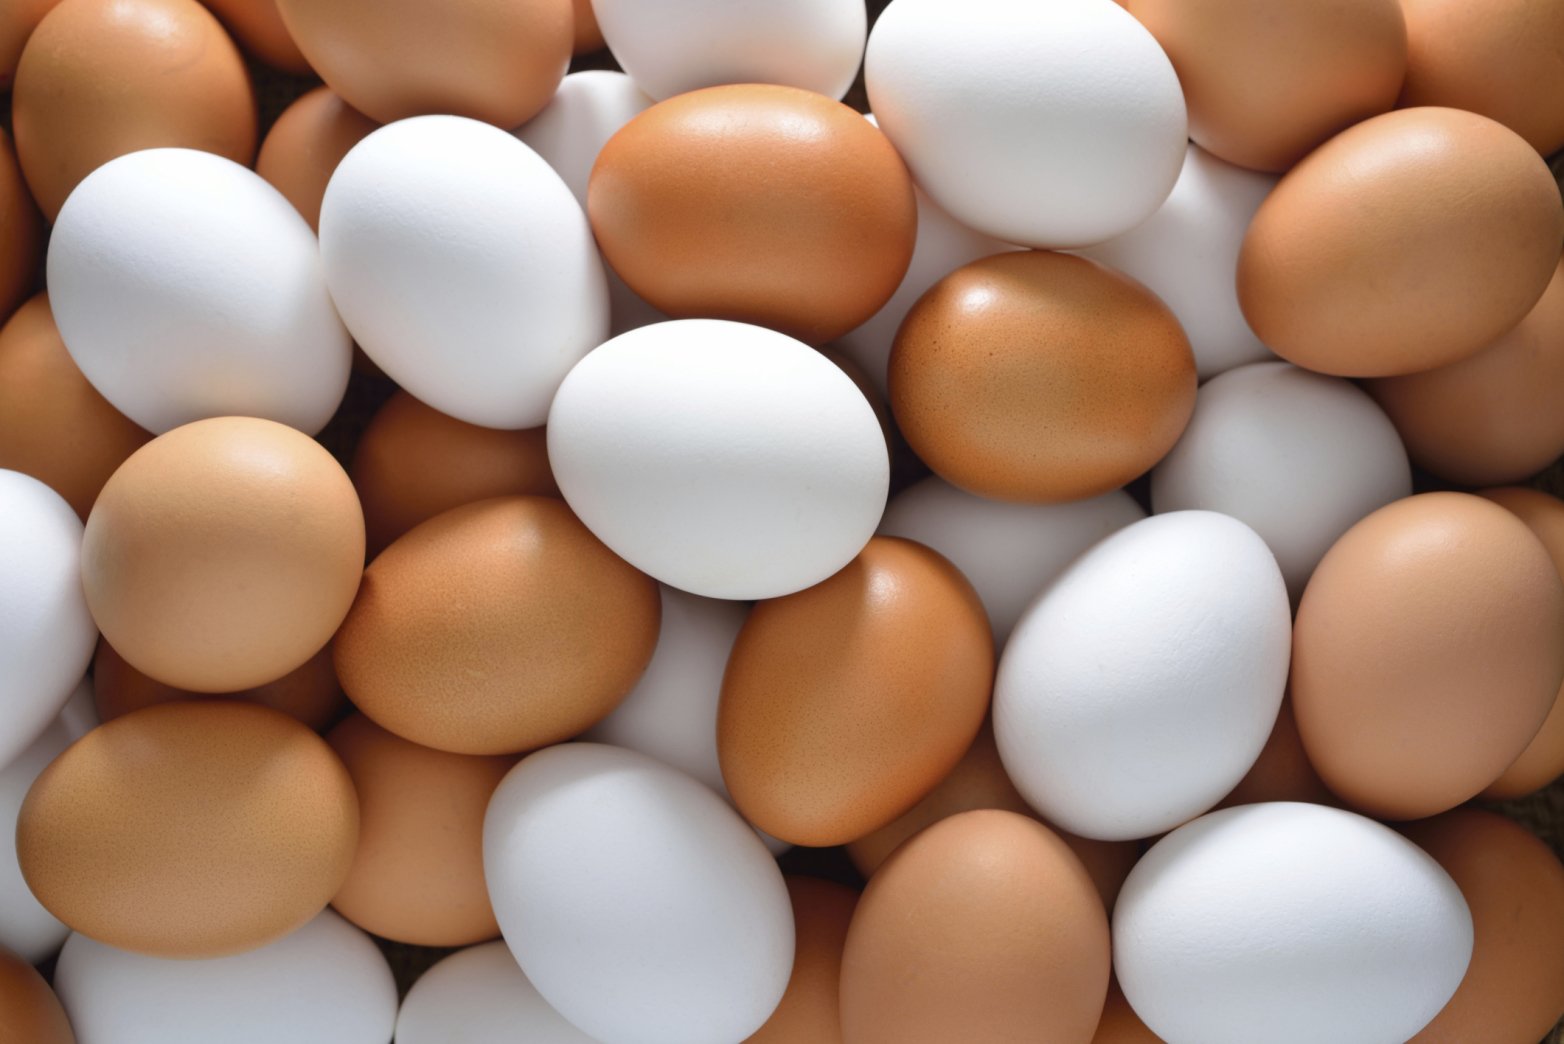 Το γνωρίζατε; – Ποια η διαφορά ανάμεσα σε λευκά και καφέ αυγά;